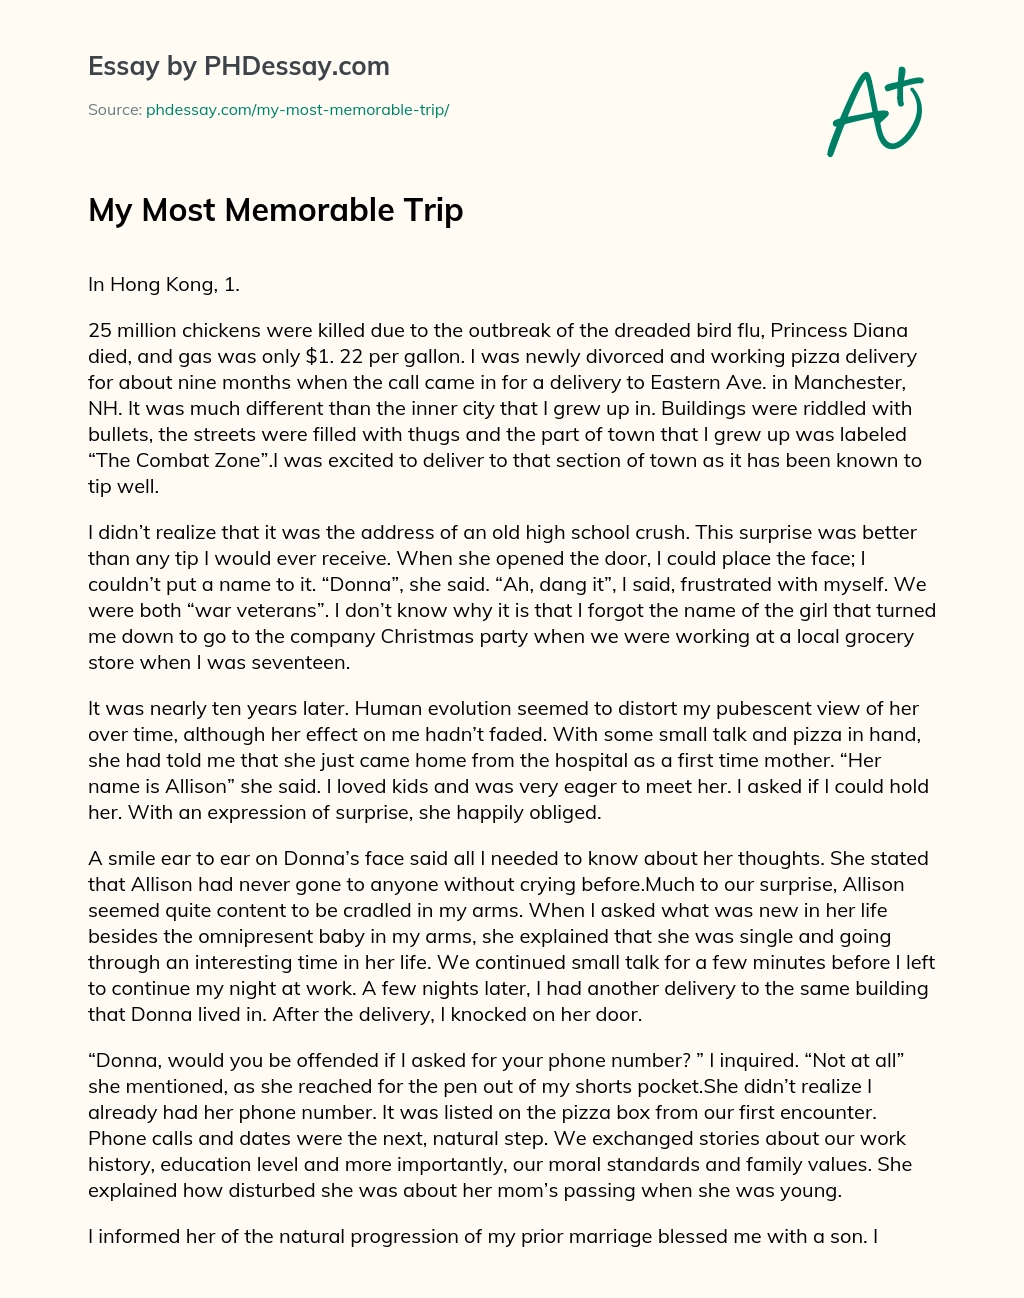 describe a memorable trip you took essay